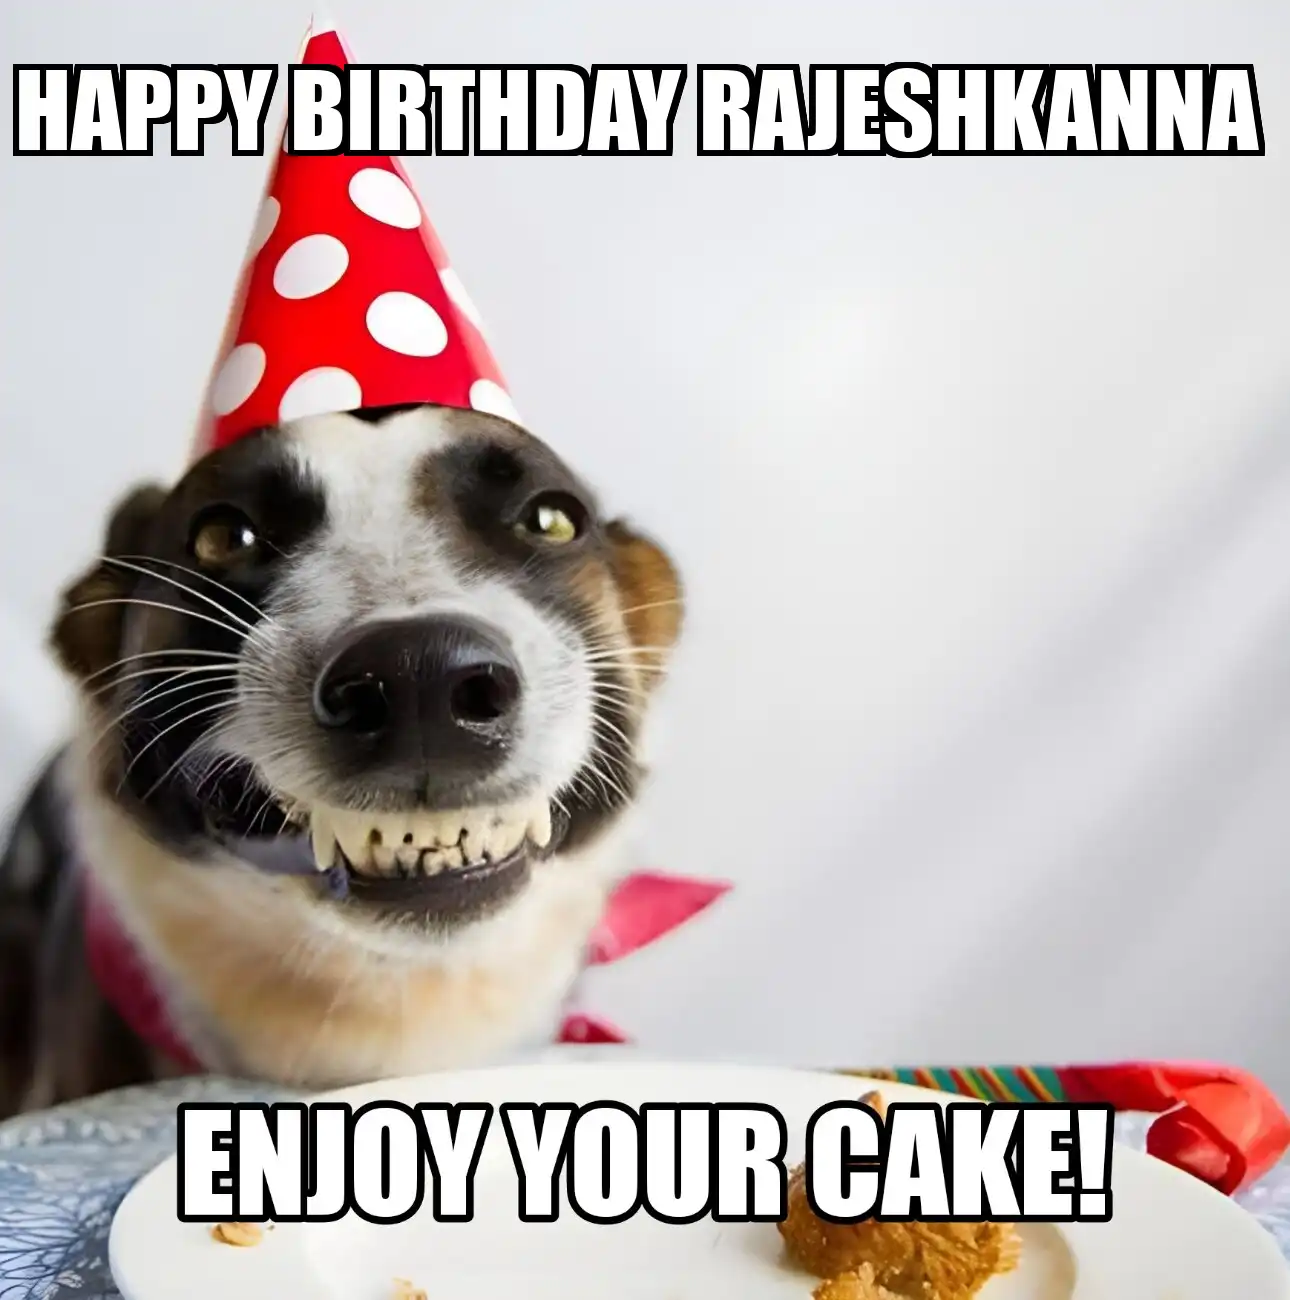 Happy Birthday Rajeshkanna Enjoy Your Cake Dog Meme